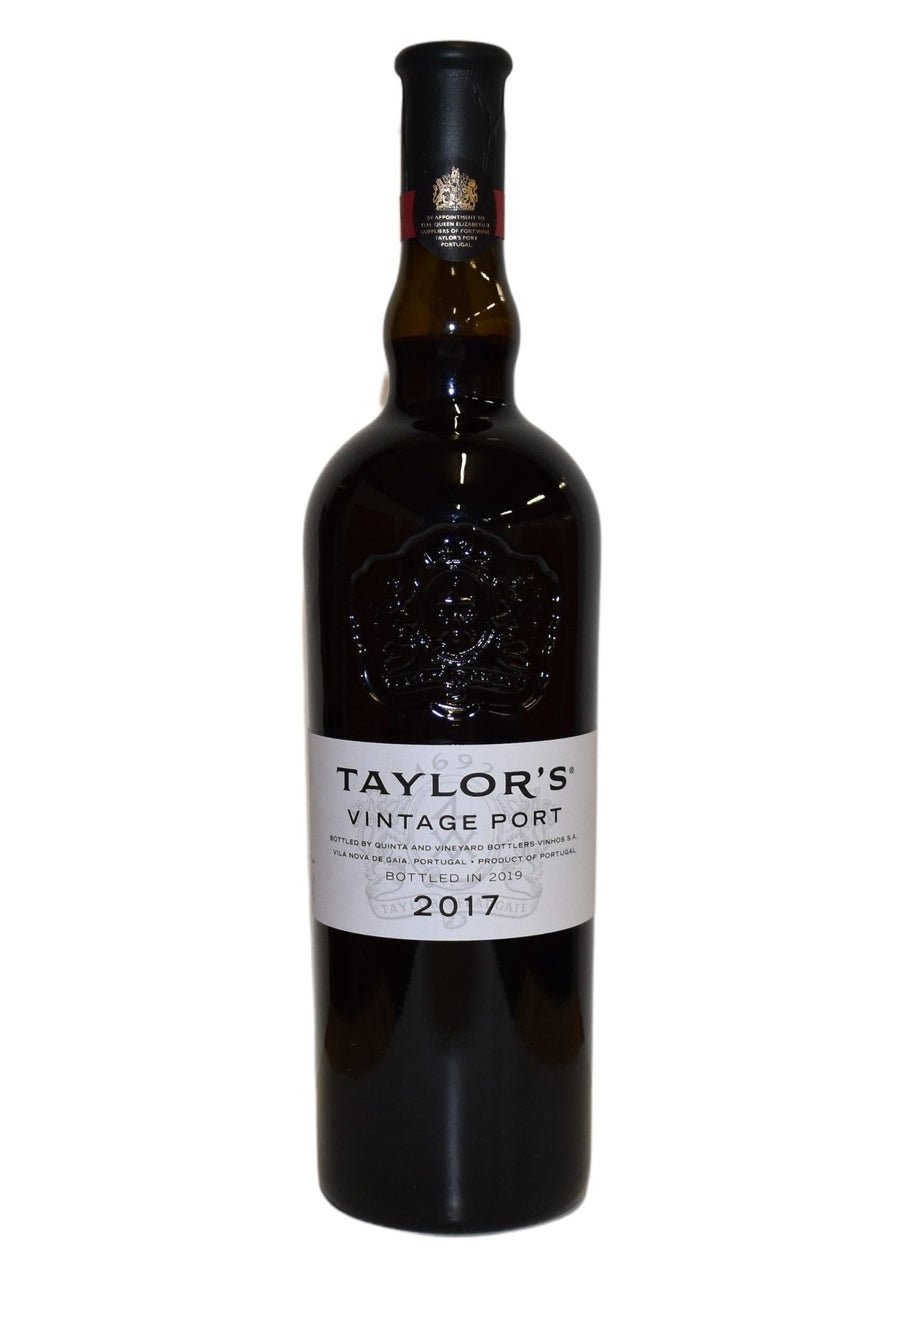 Eine Flasche Taylor's Vintage 2017 0,75l aus dem Jahr 2017.